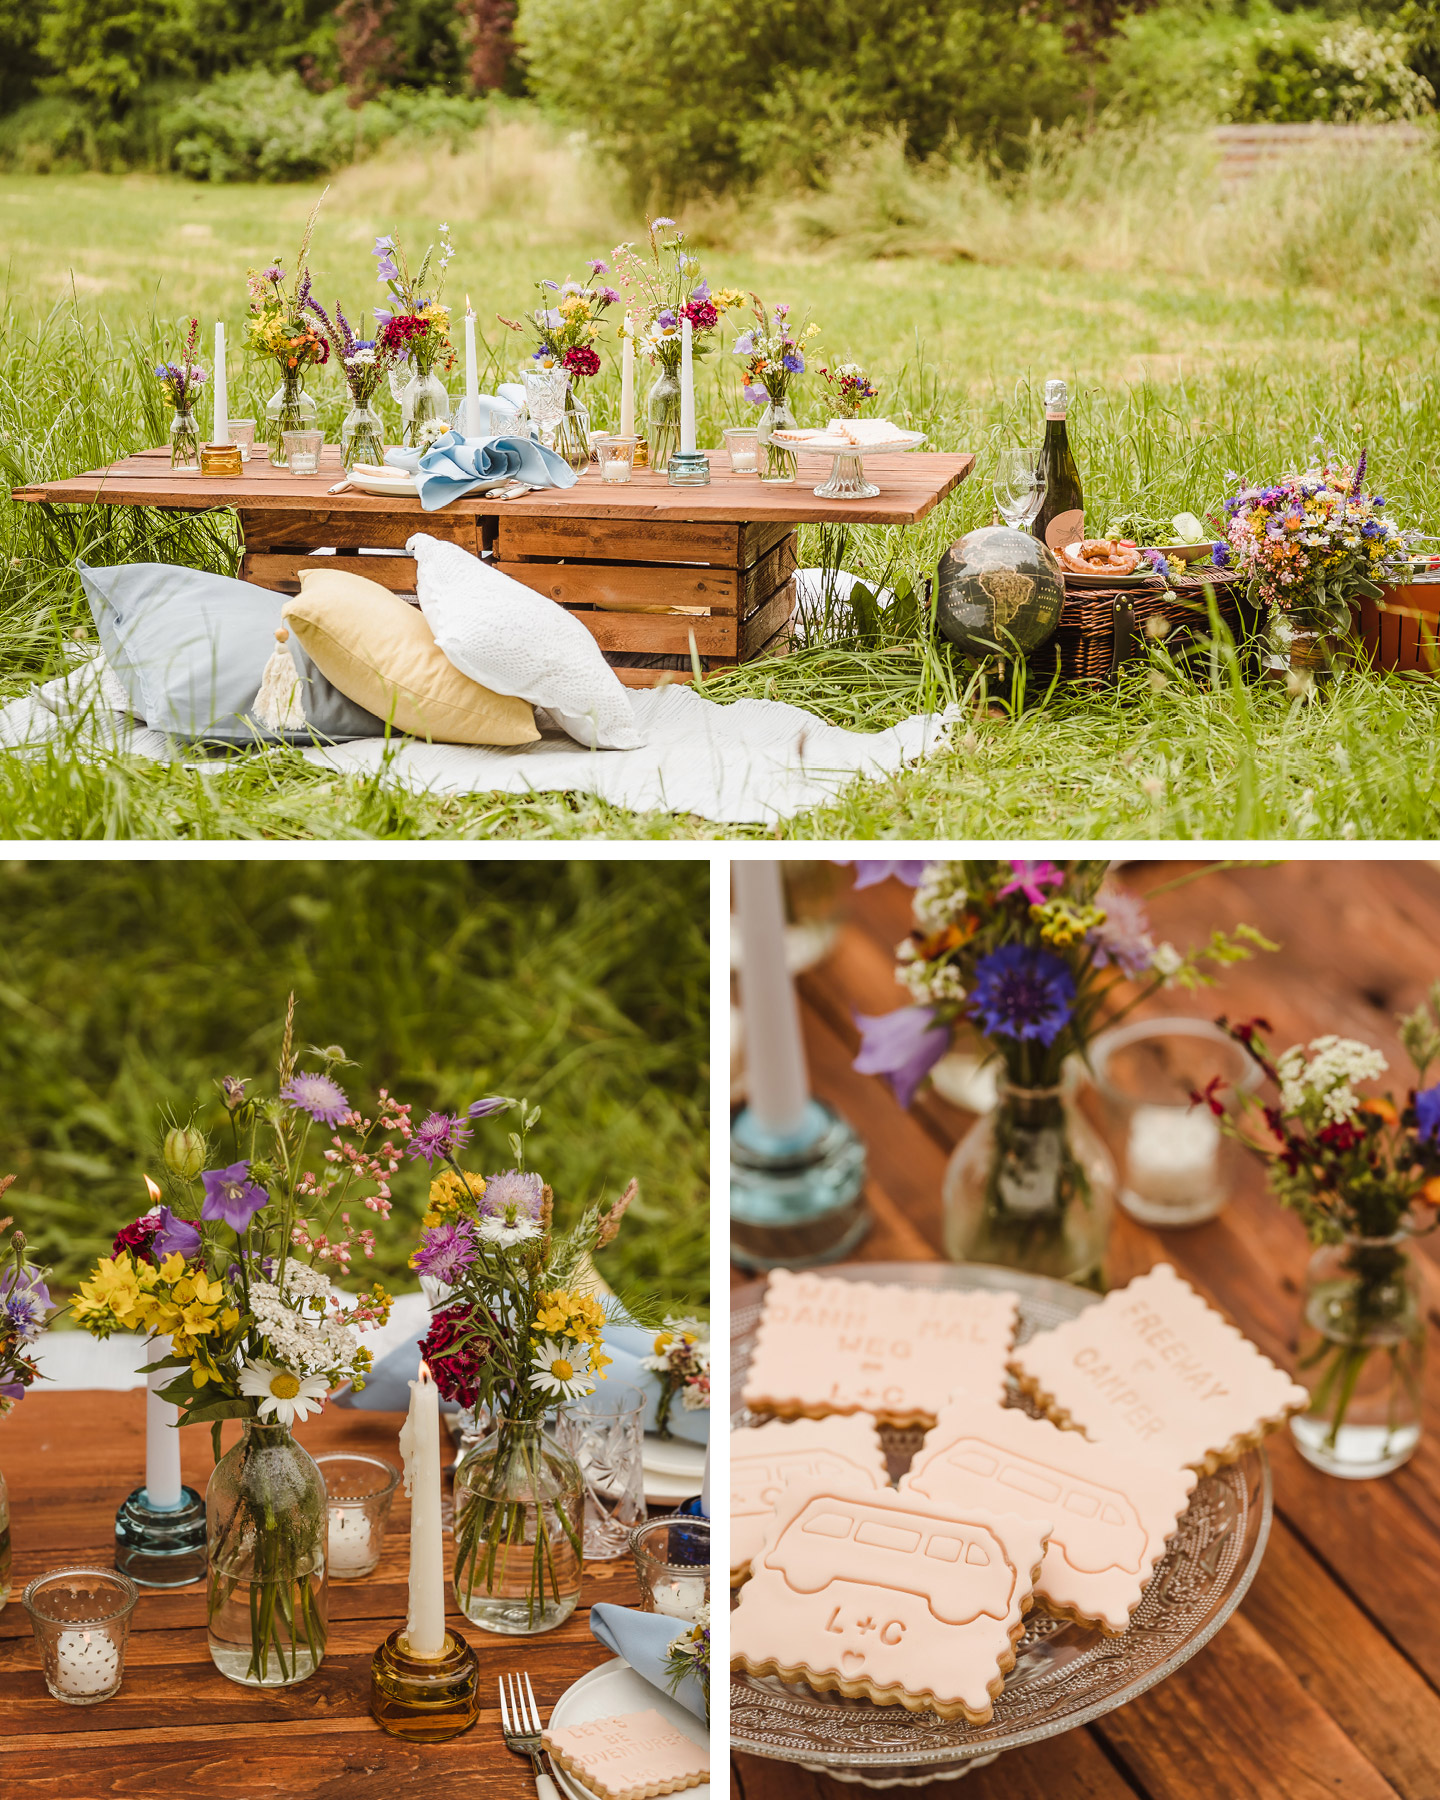 Kleine Holztisch ist auf Wieso zum Picknicken gedeckt und mit bunten Blumen zur Camper Hochzeit dekoriert.